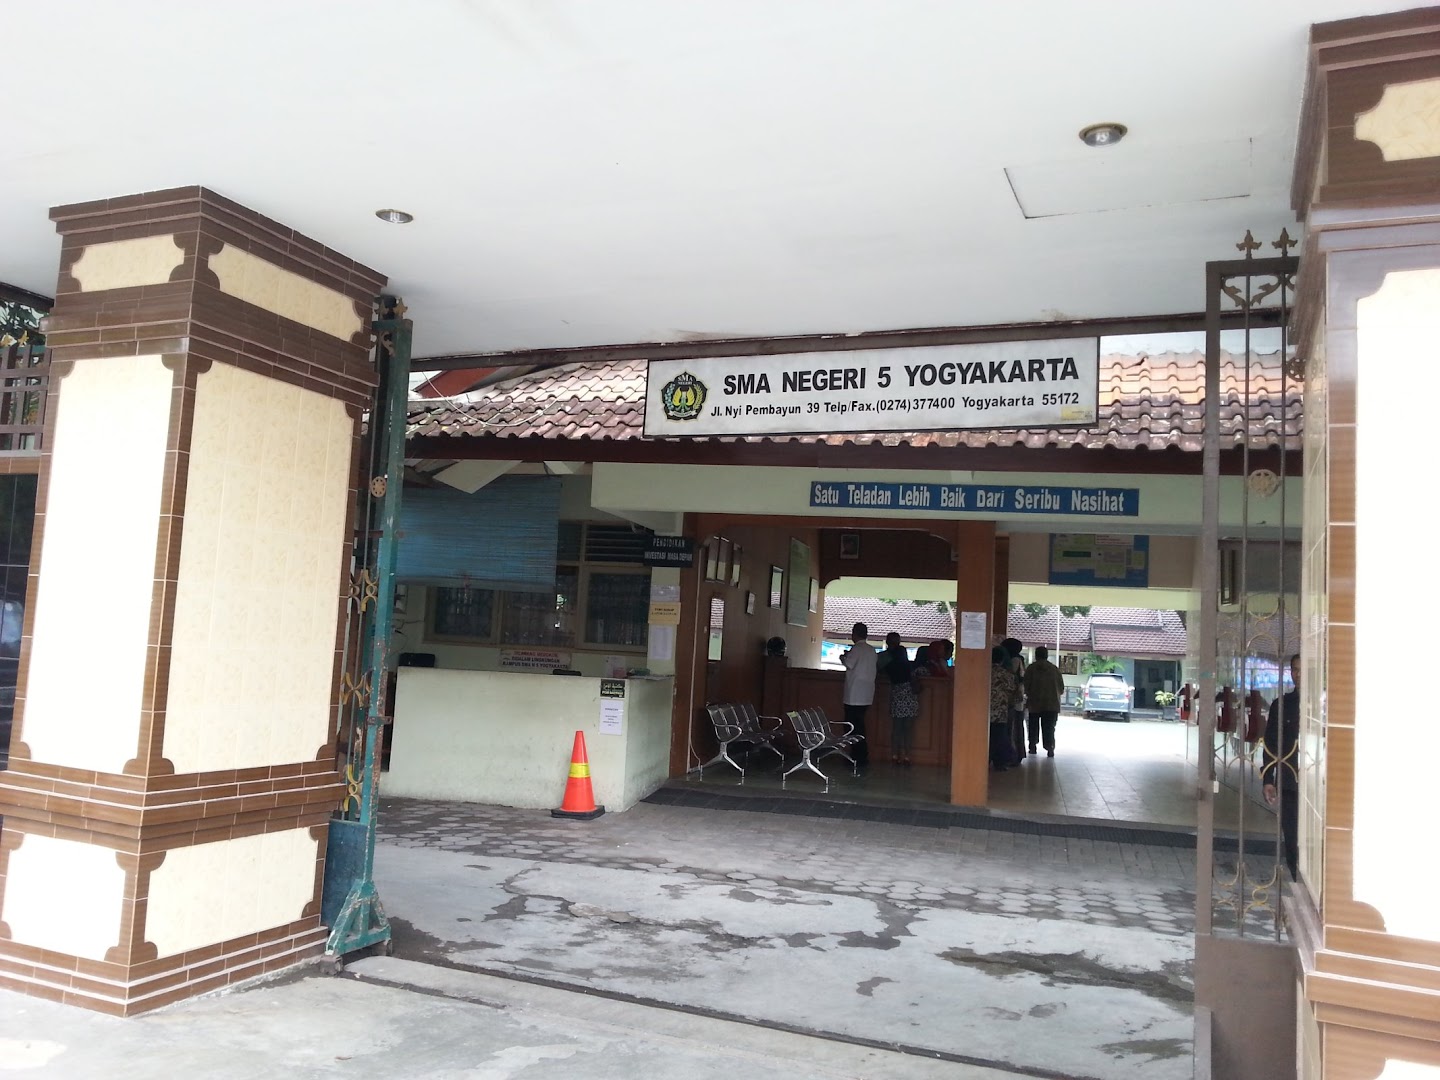 Gambar Sma Negeri 5 Puspanegara Yogyakarta